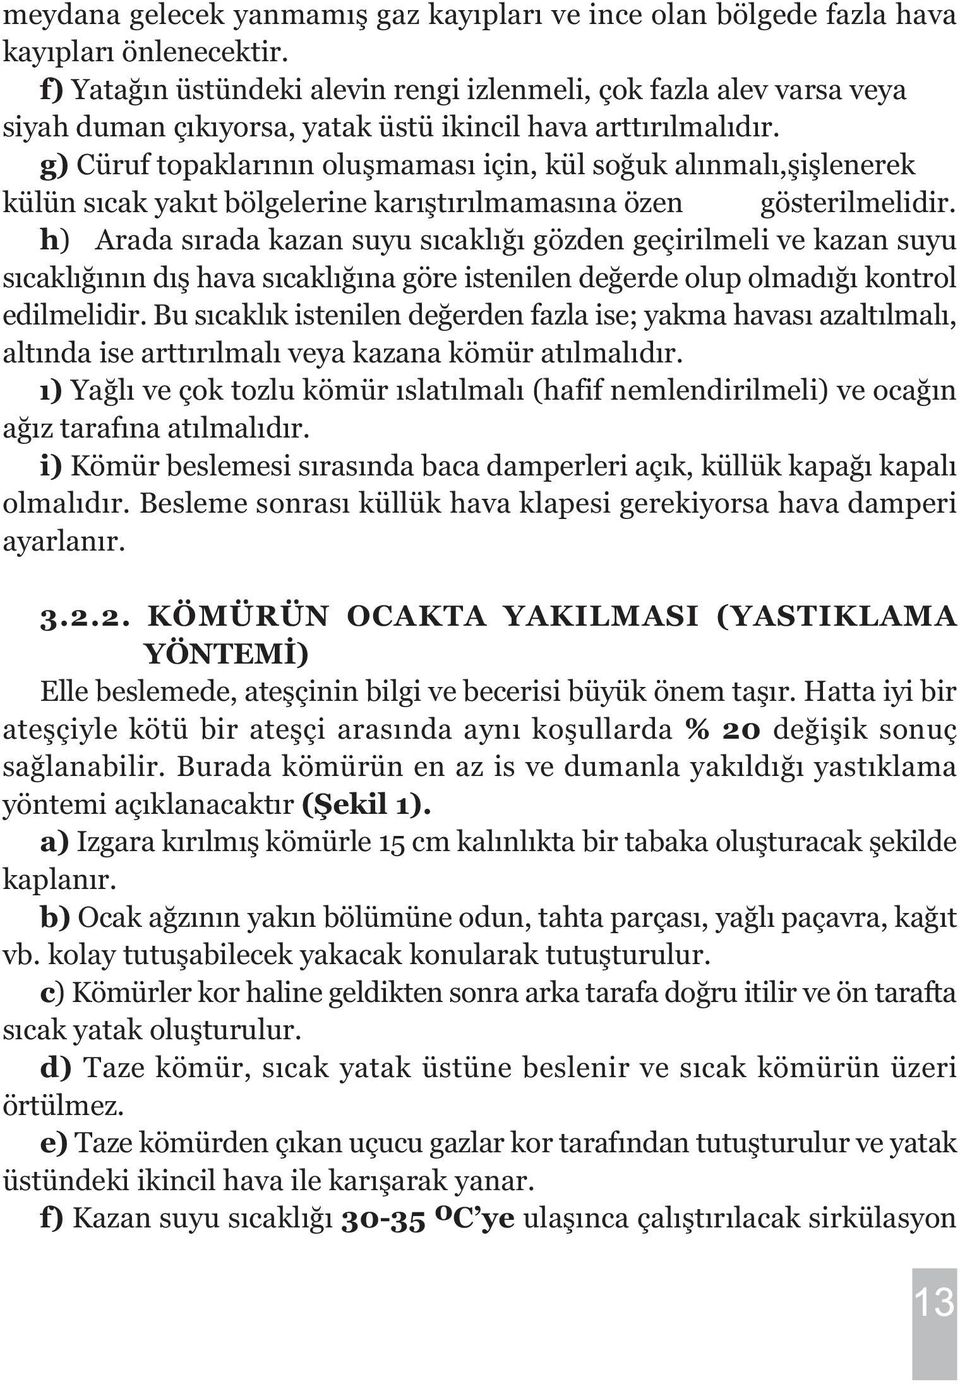 g) Cüruf topaklarýnýn oluþmamasý için, kül soðuk alýnmalý,þiþlenerek külün sýcak yakýt bölgelerine karýþtýrýlmamasýna özen gösterilmelidir.